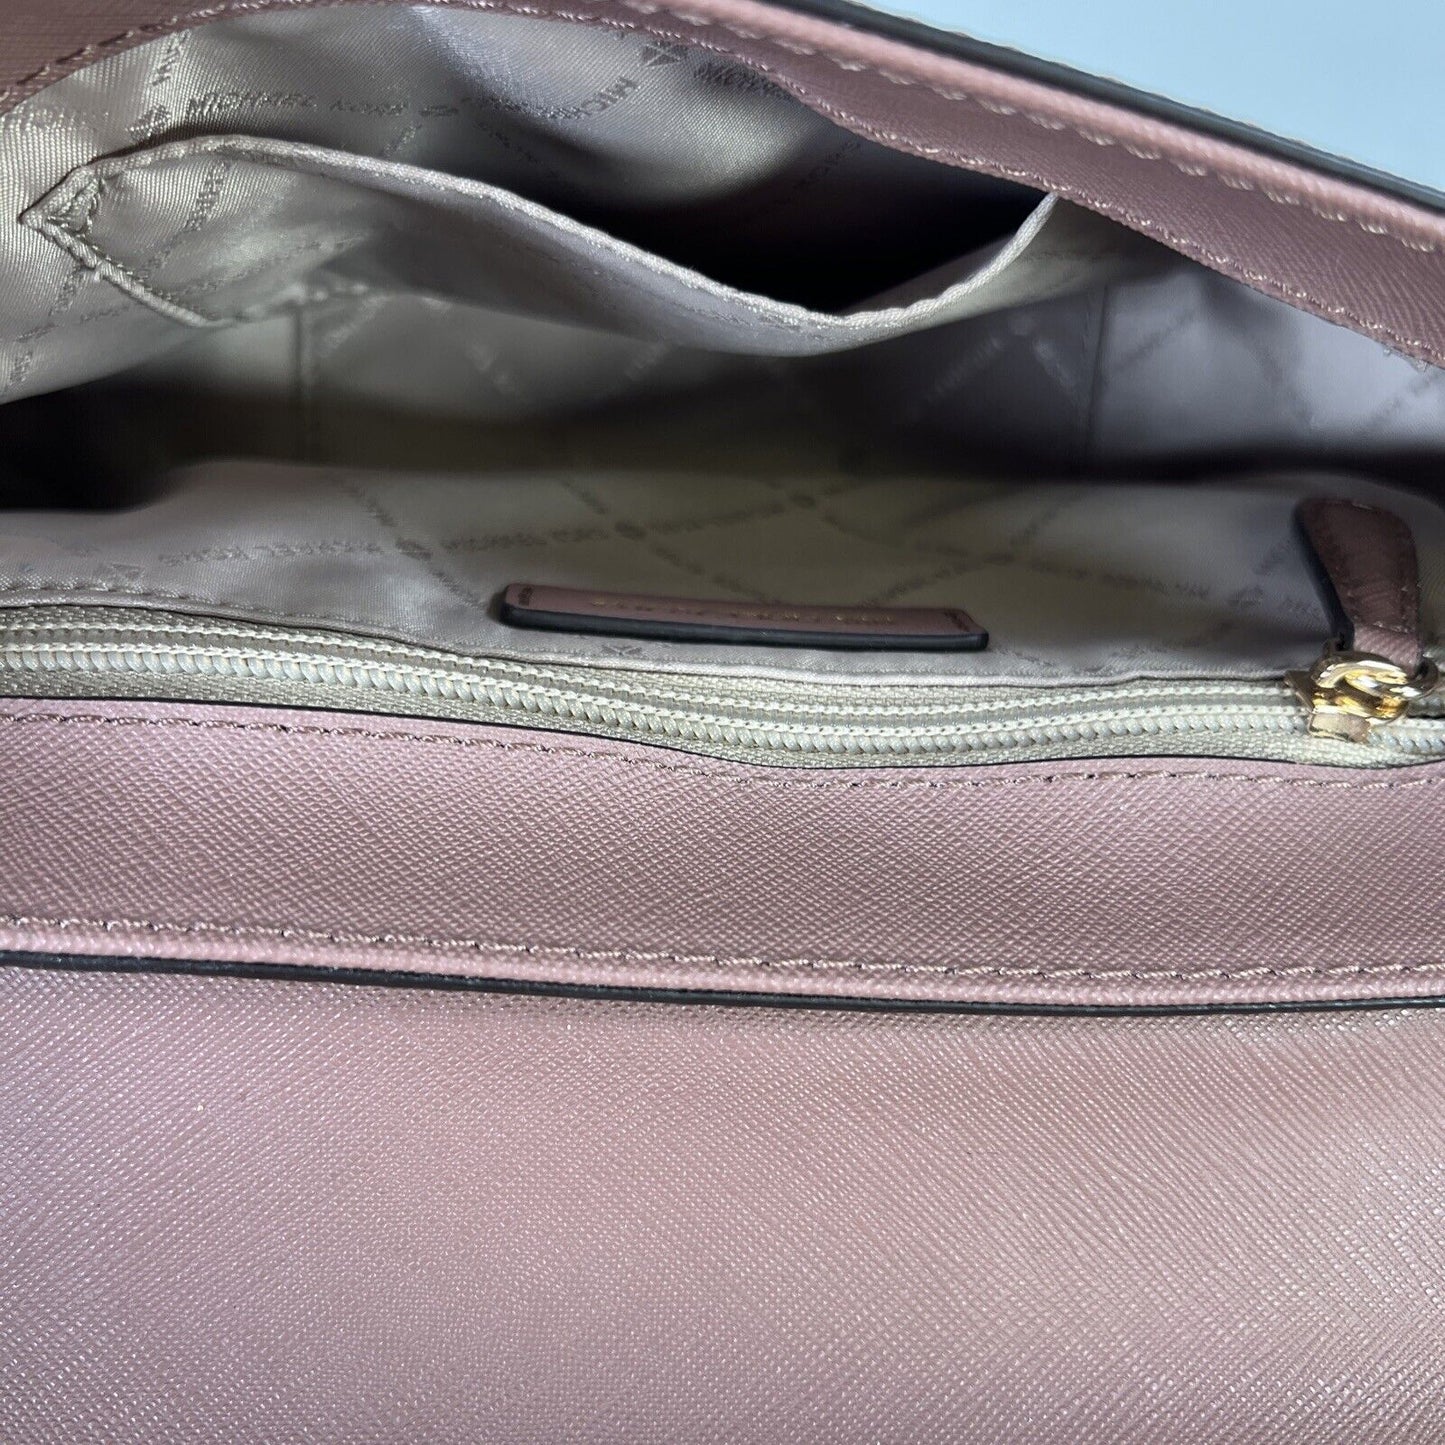 Michael Kors Women's Pink/Purple Leather Chain Strap Shoulder Bag Purse